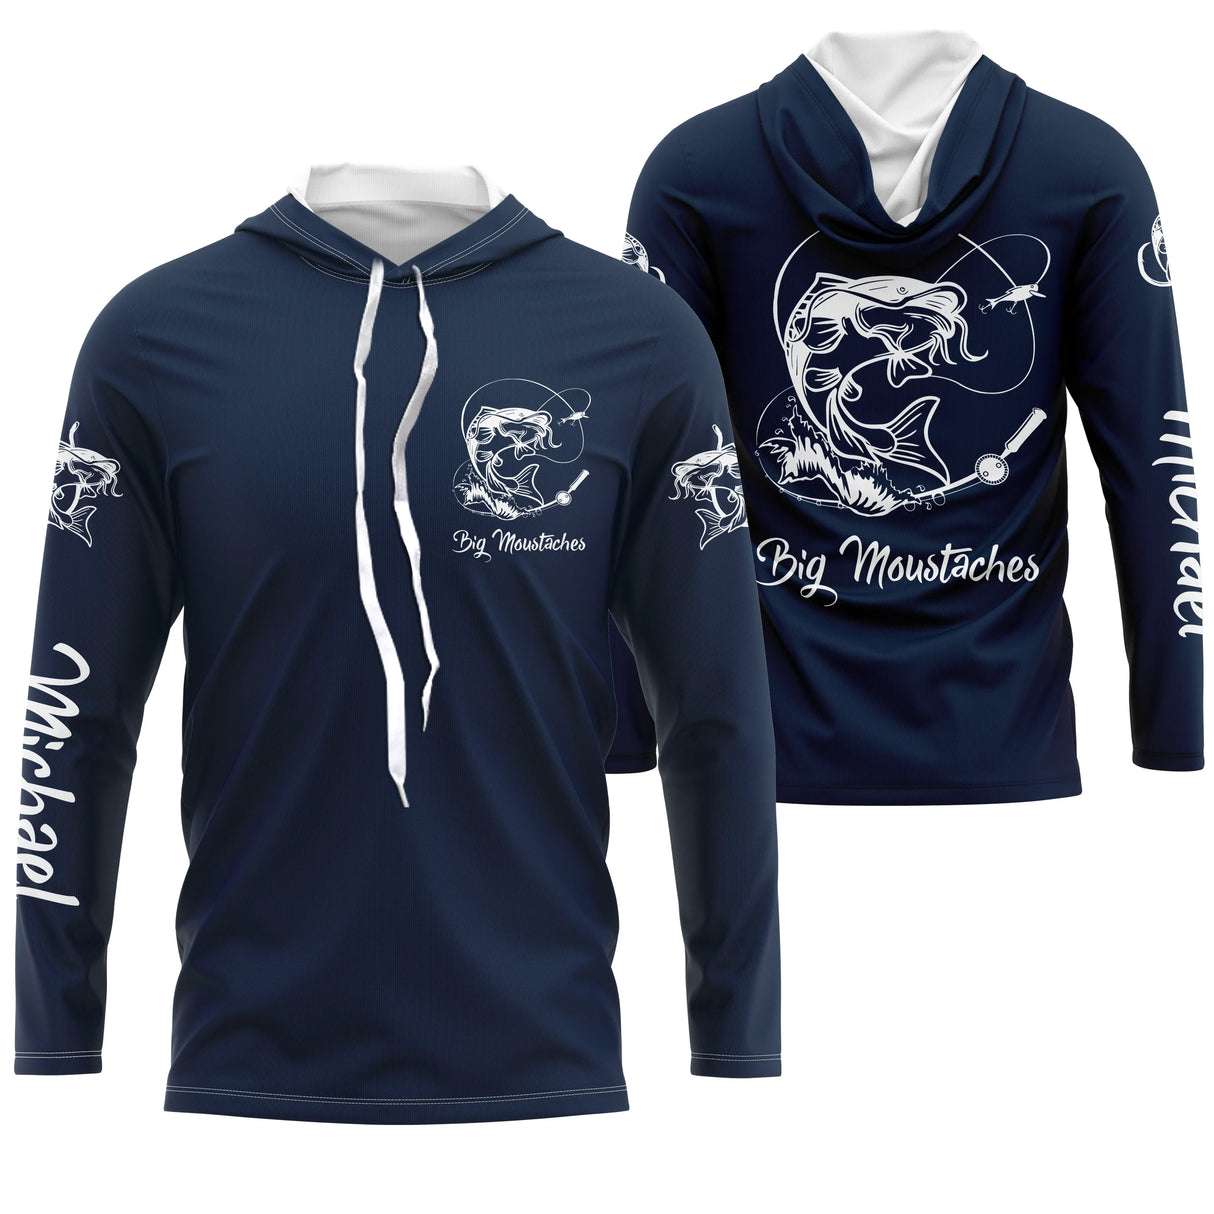 T-shirt personalizzata per la pesca del pesce gatto, regalo ideale per il pescatore, abbigliamento anti-UV blu navy - CT21072219